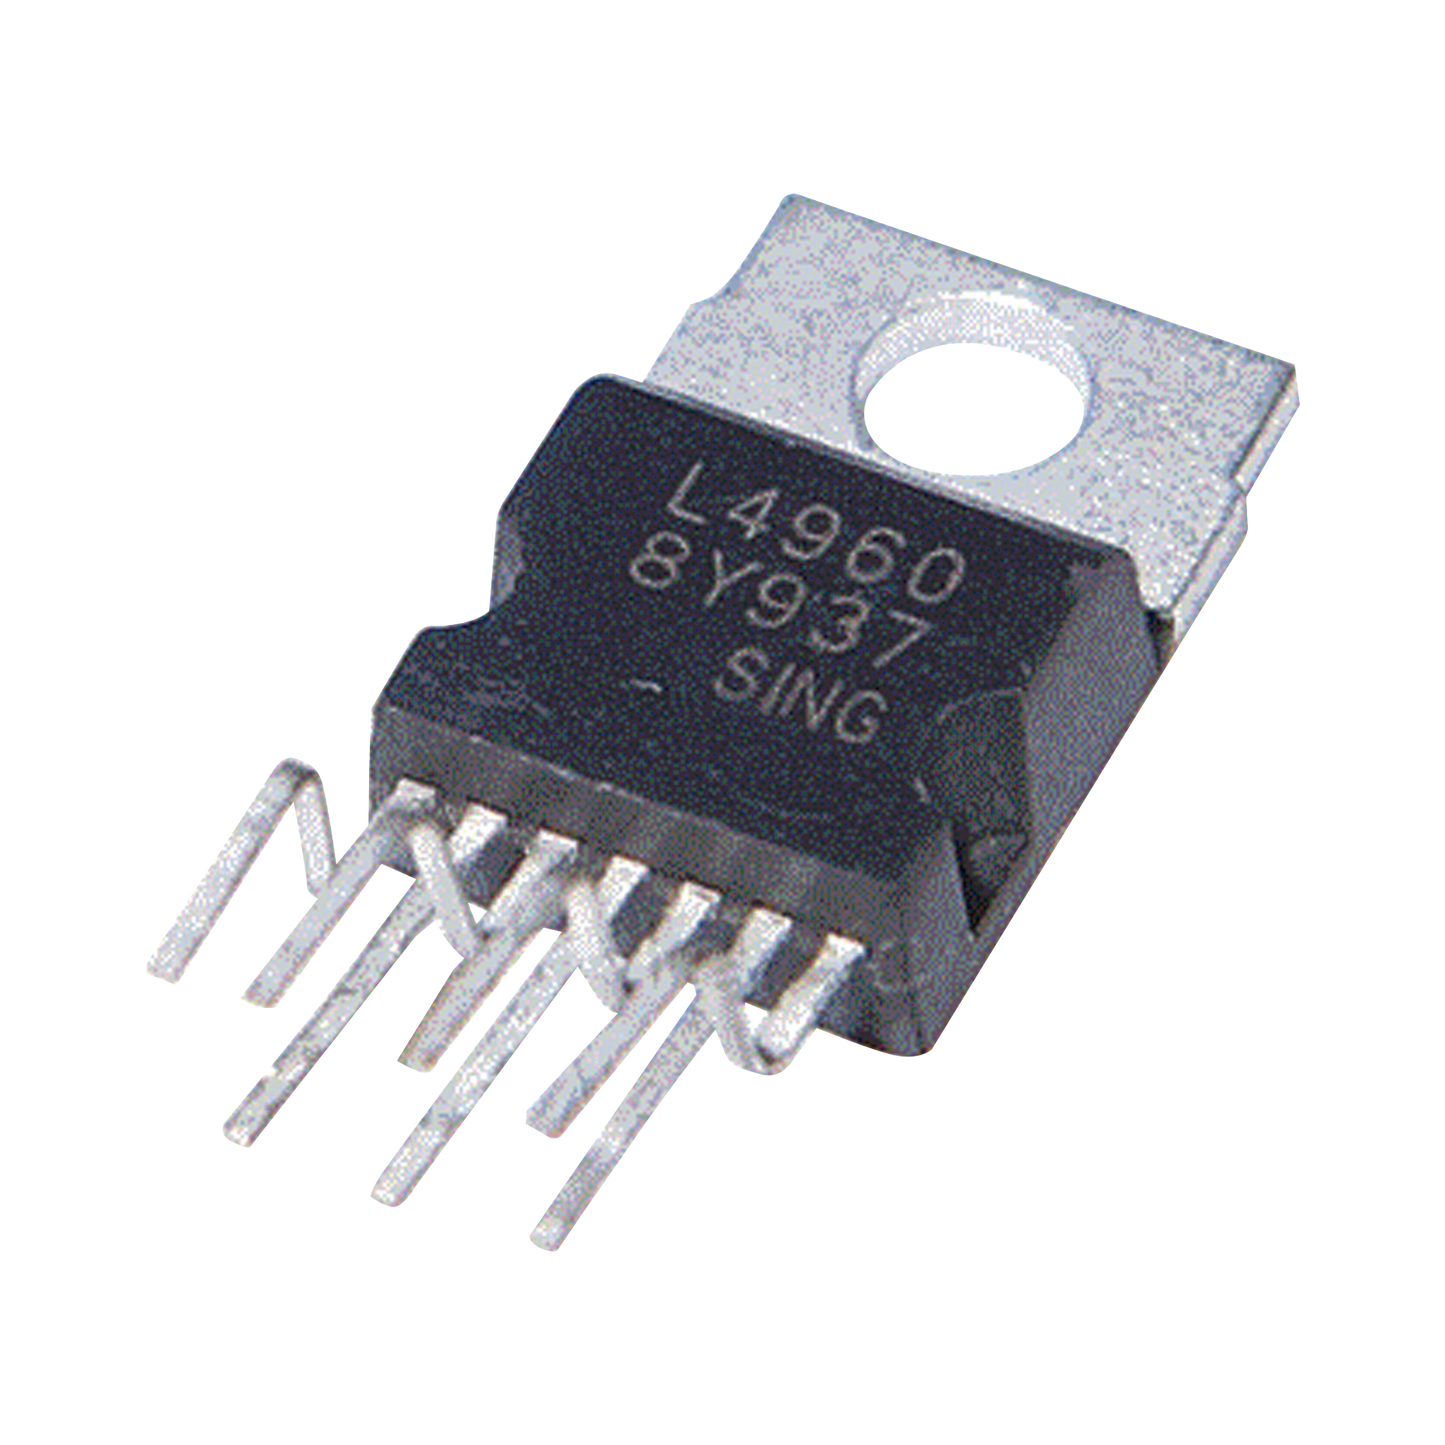 Regulador de voltaje de conmutación 5.1 to 40V 2.5 Amp, L4960